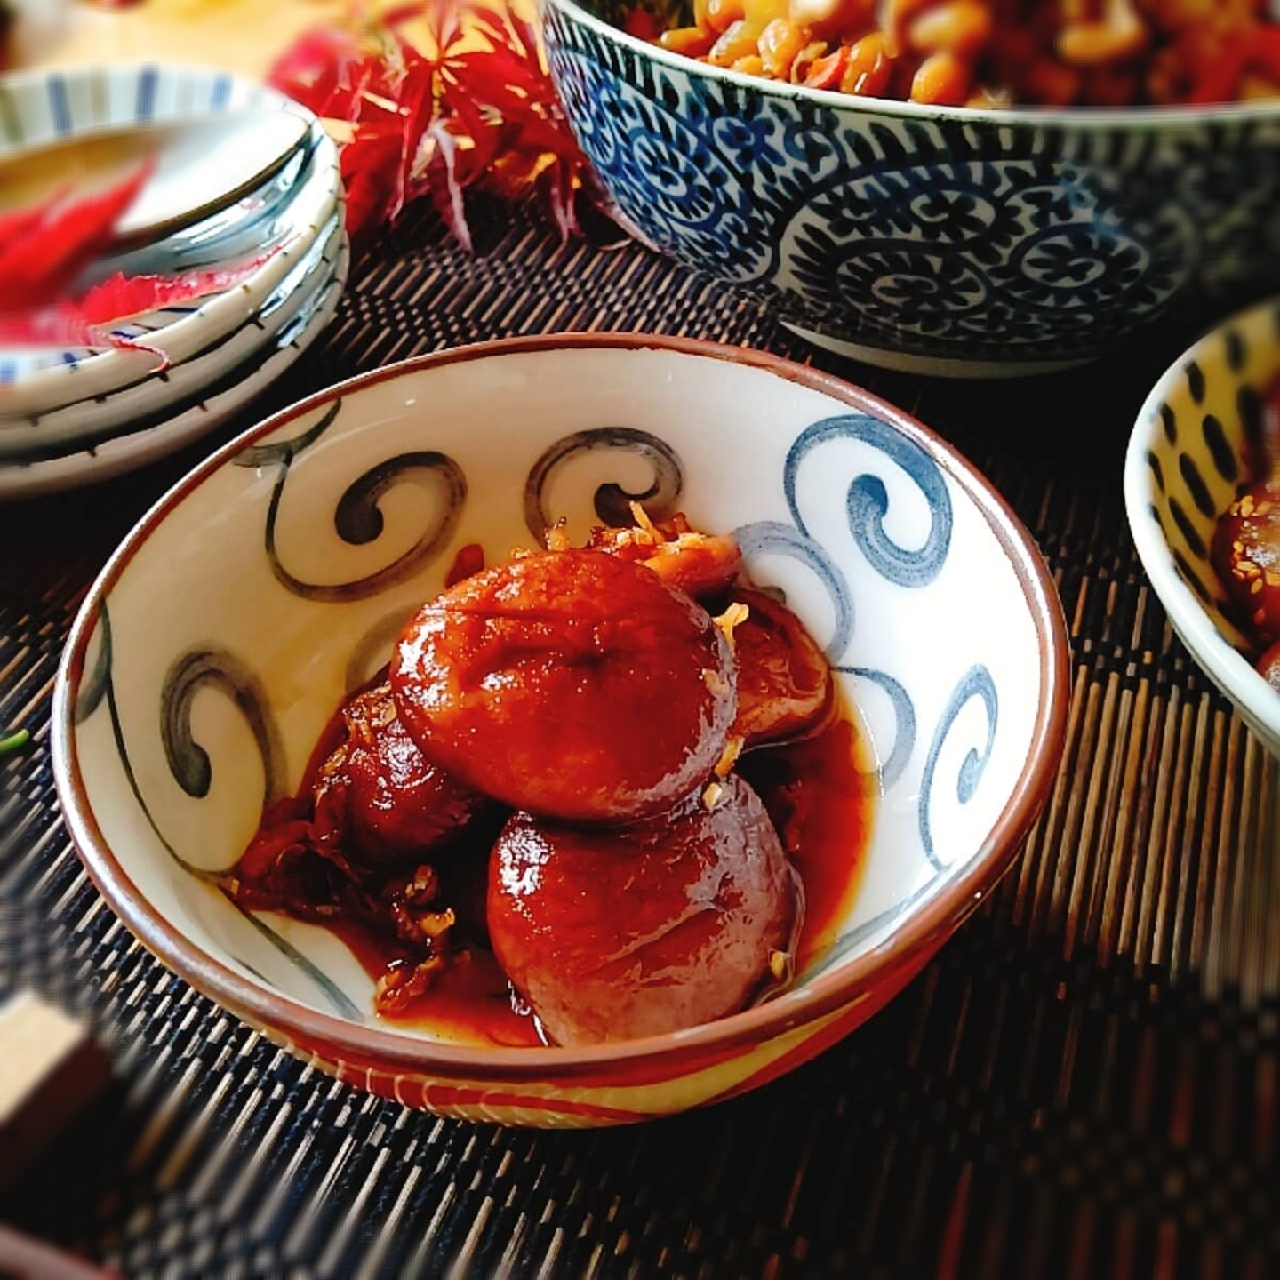 佐野未起さんの料理 幻の地場名産品 椎茸と生姜の佃煮 大人味の佃煮